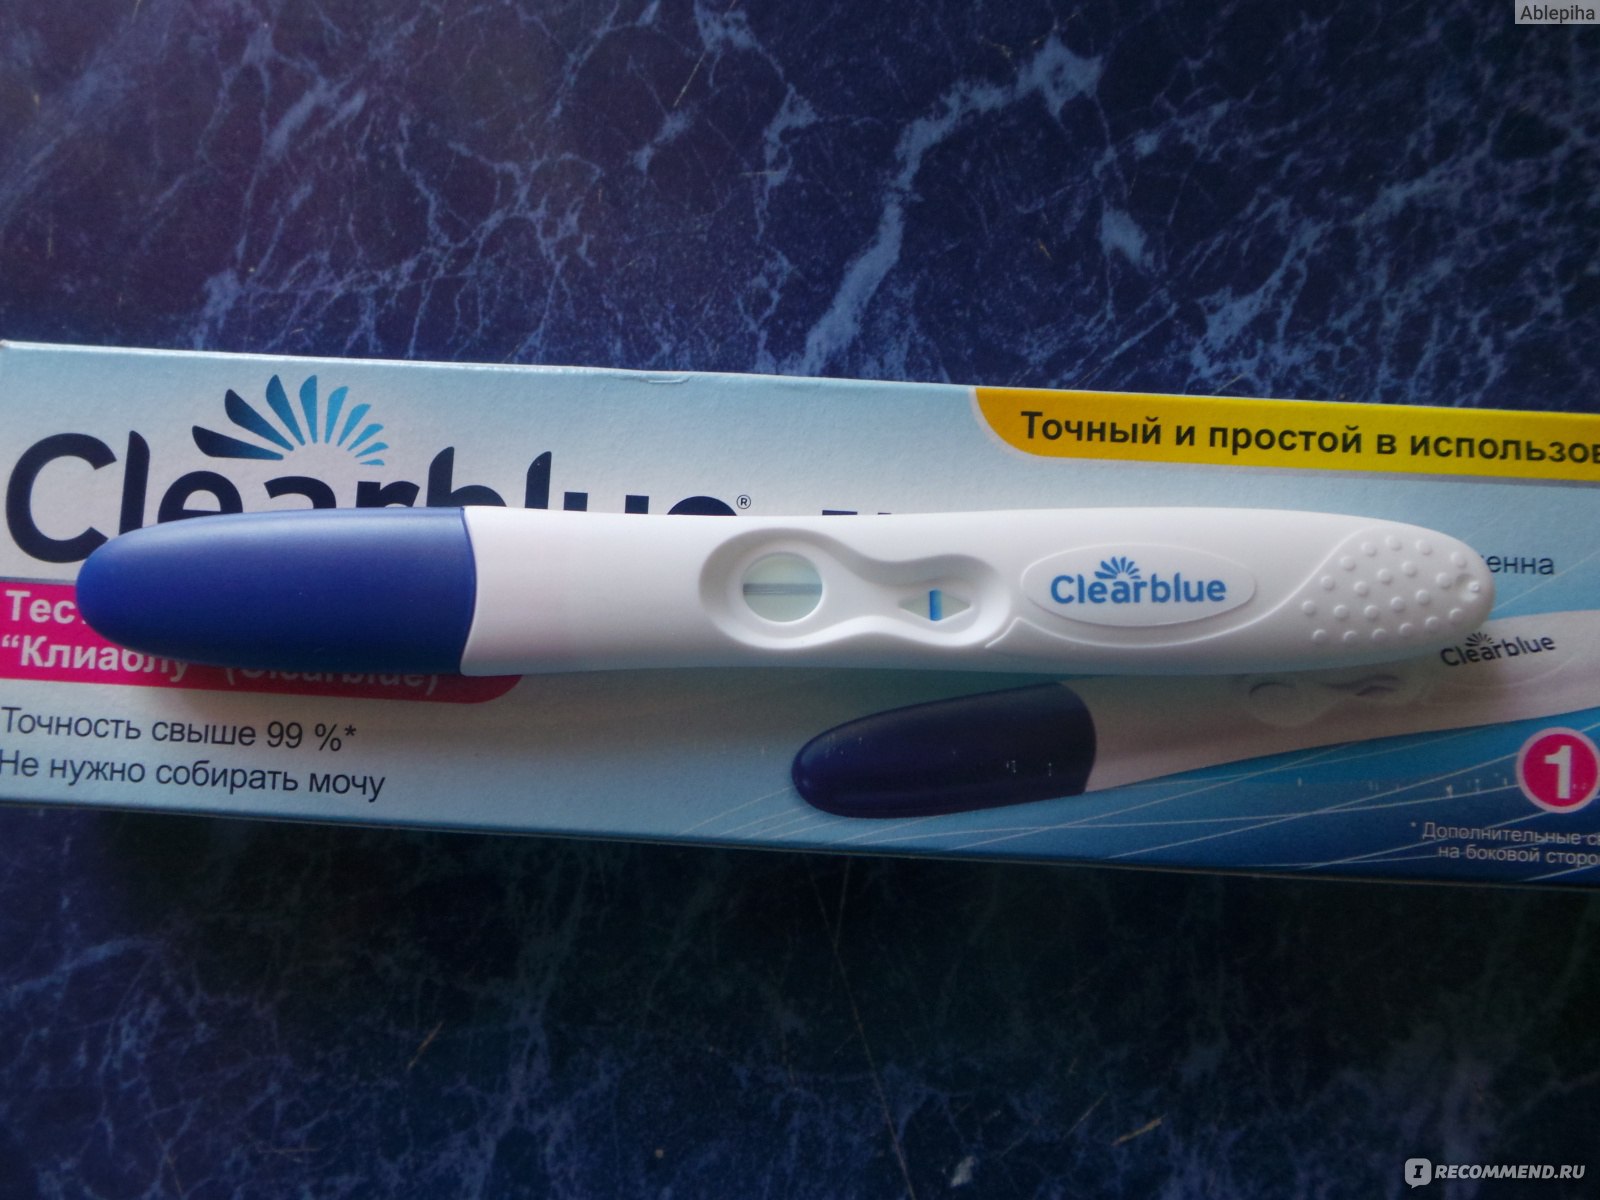 Тест на беременность Clearblue отрицательный отрицательный